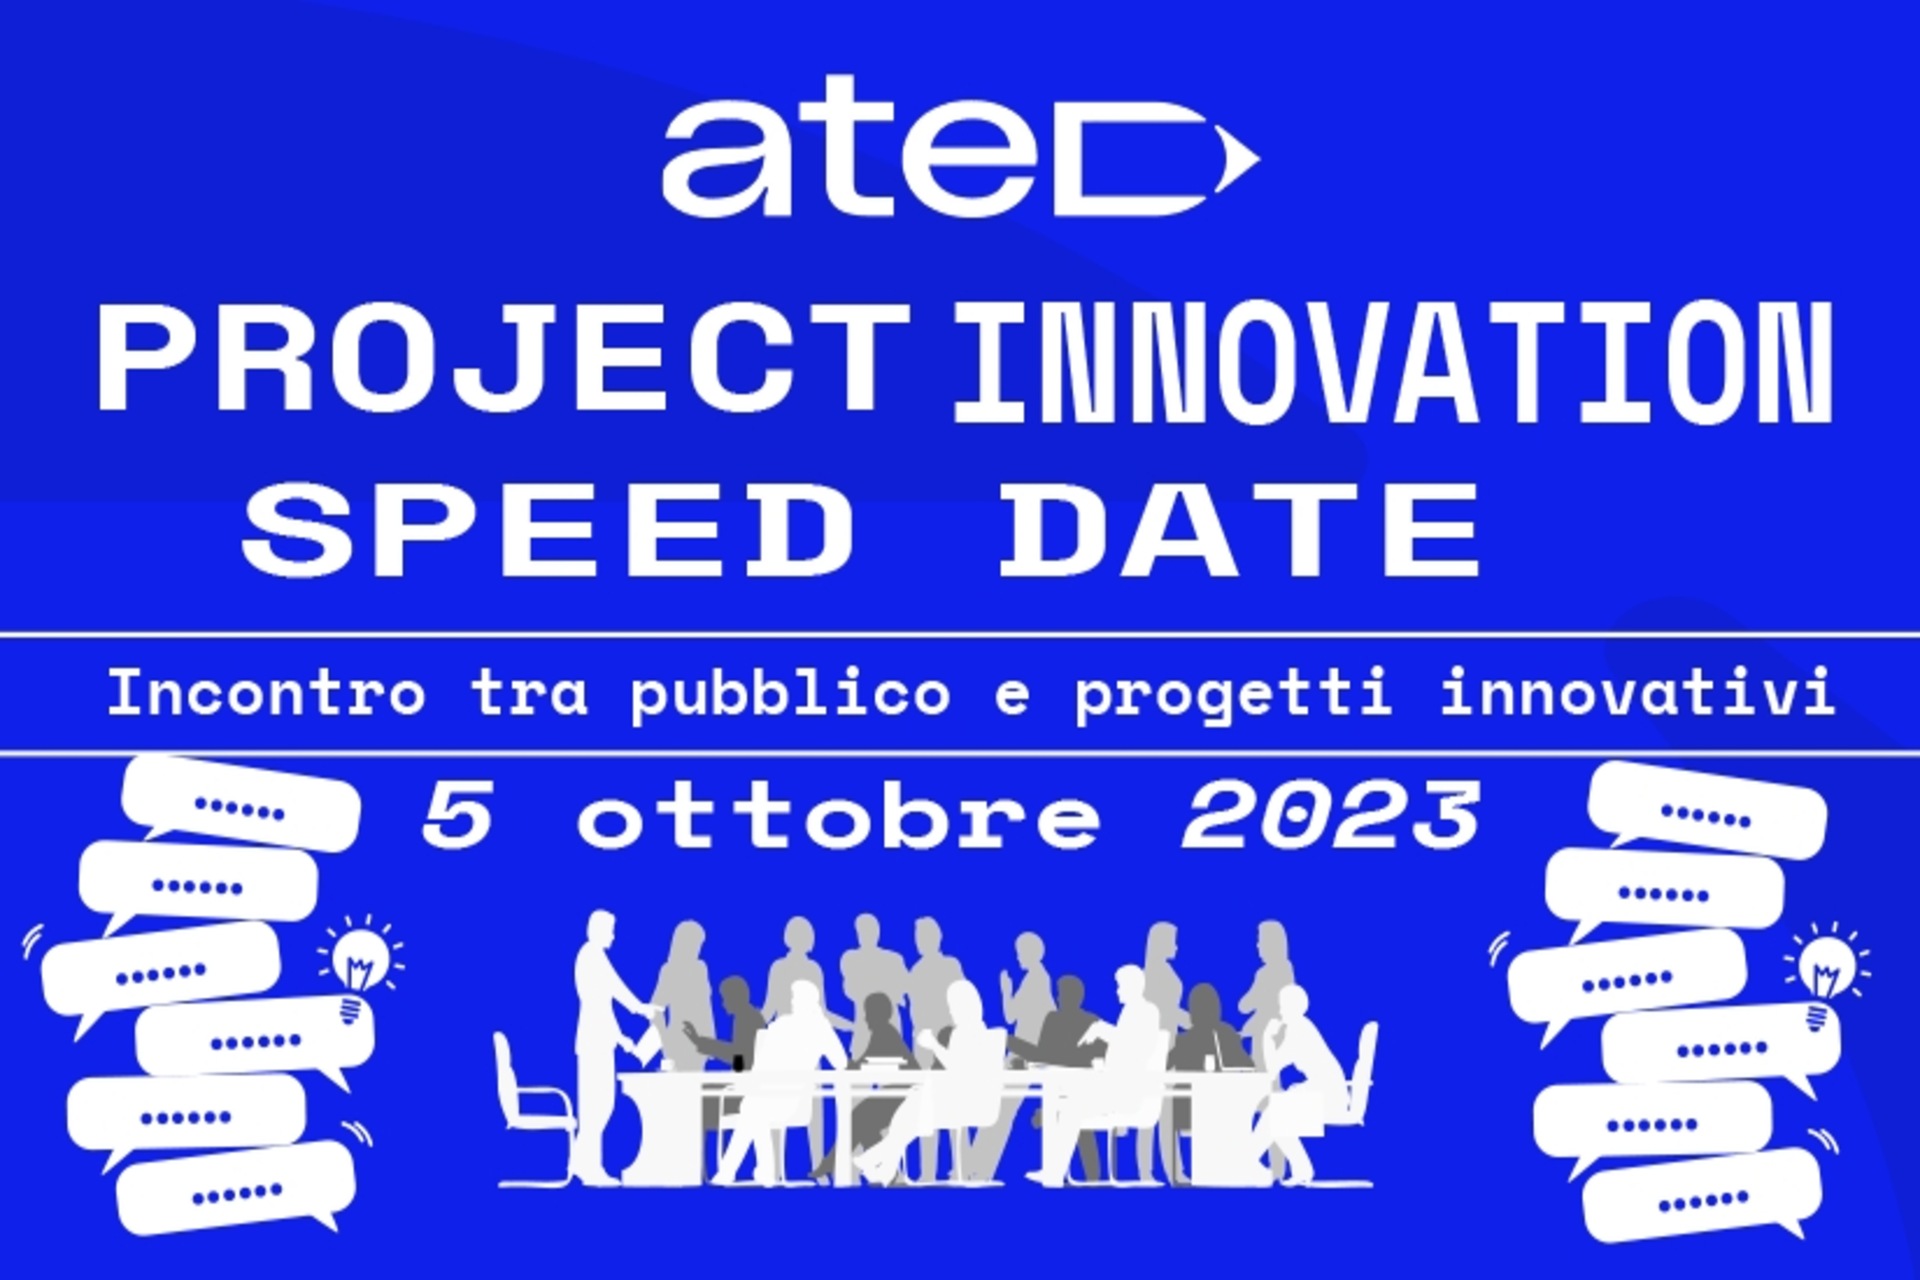 ATED Projesi İnovasyon Hız Tarihi: afiş ve anahtar görsel